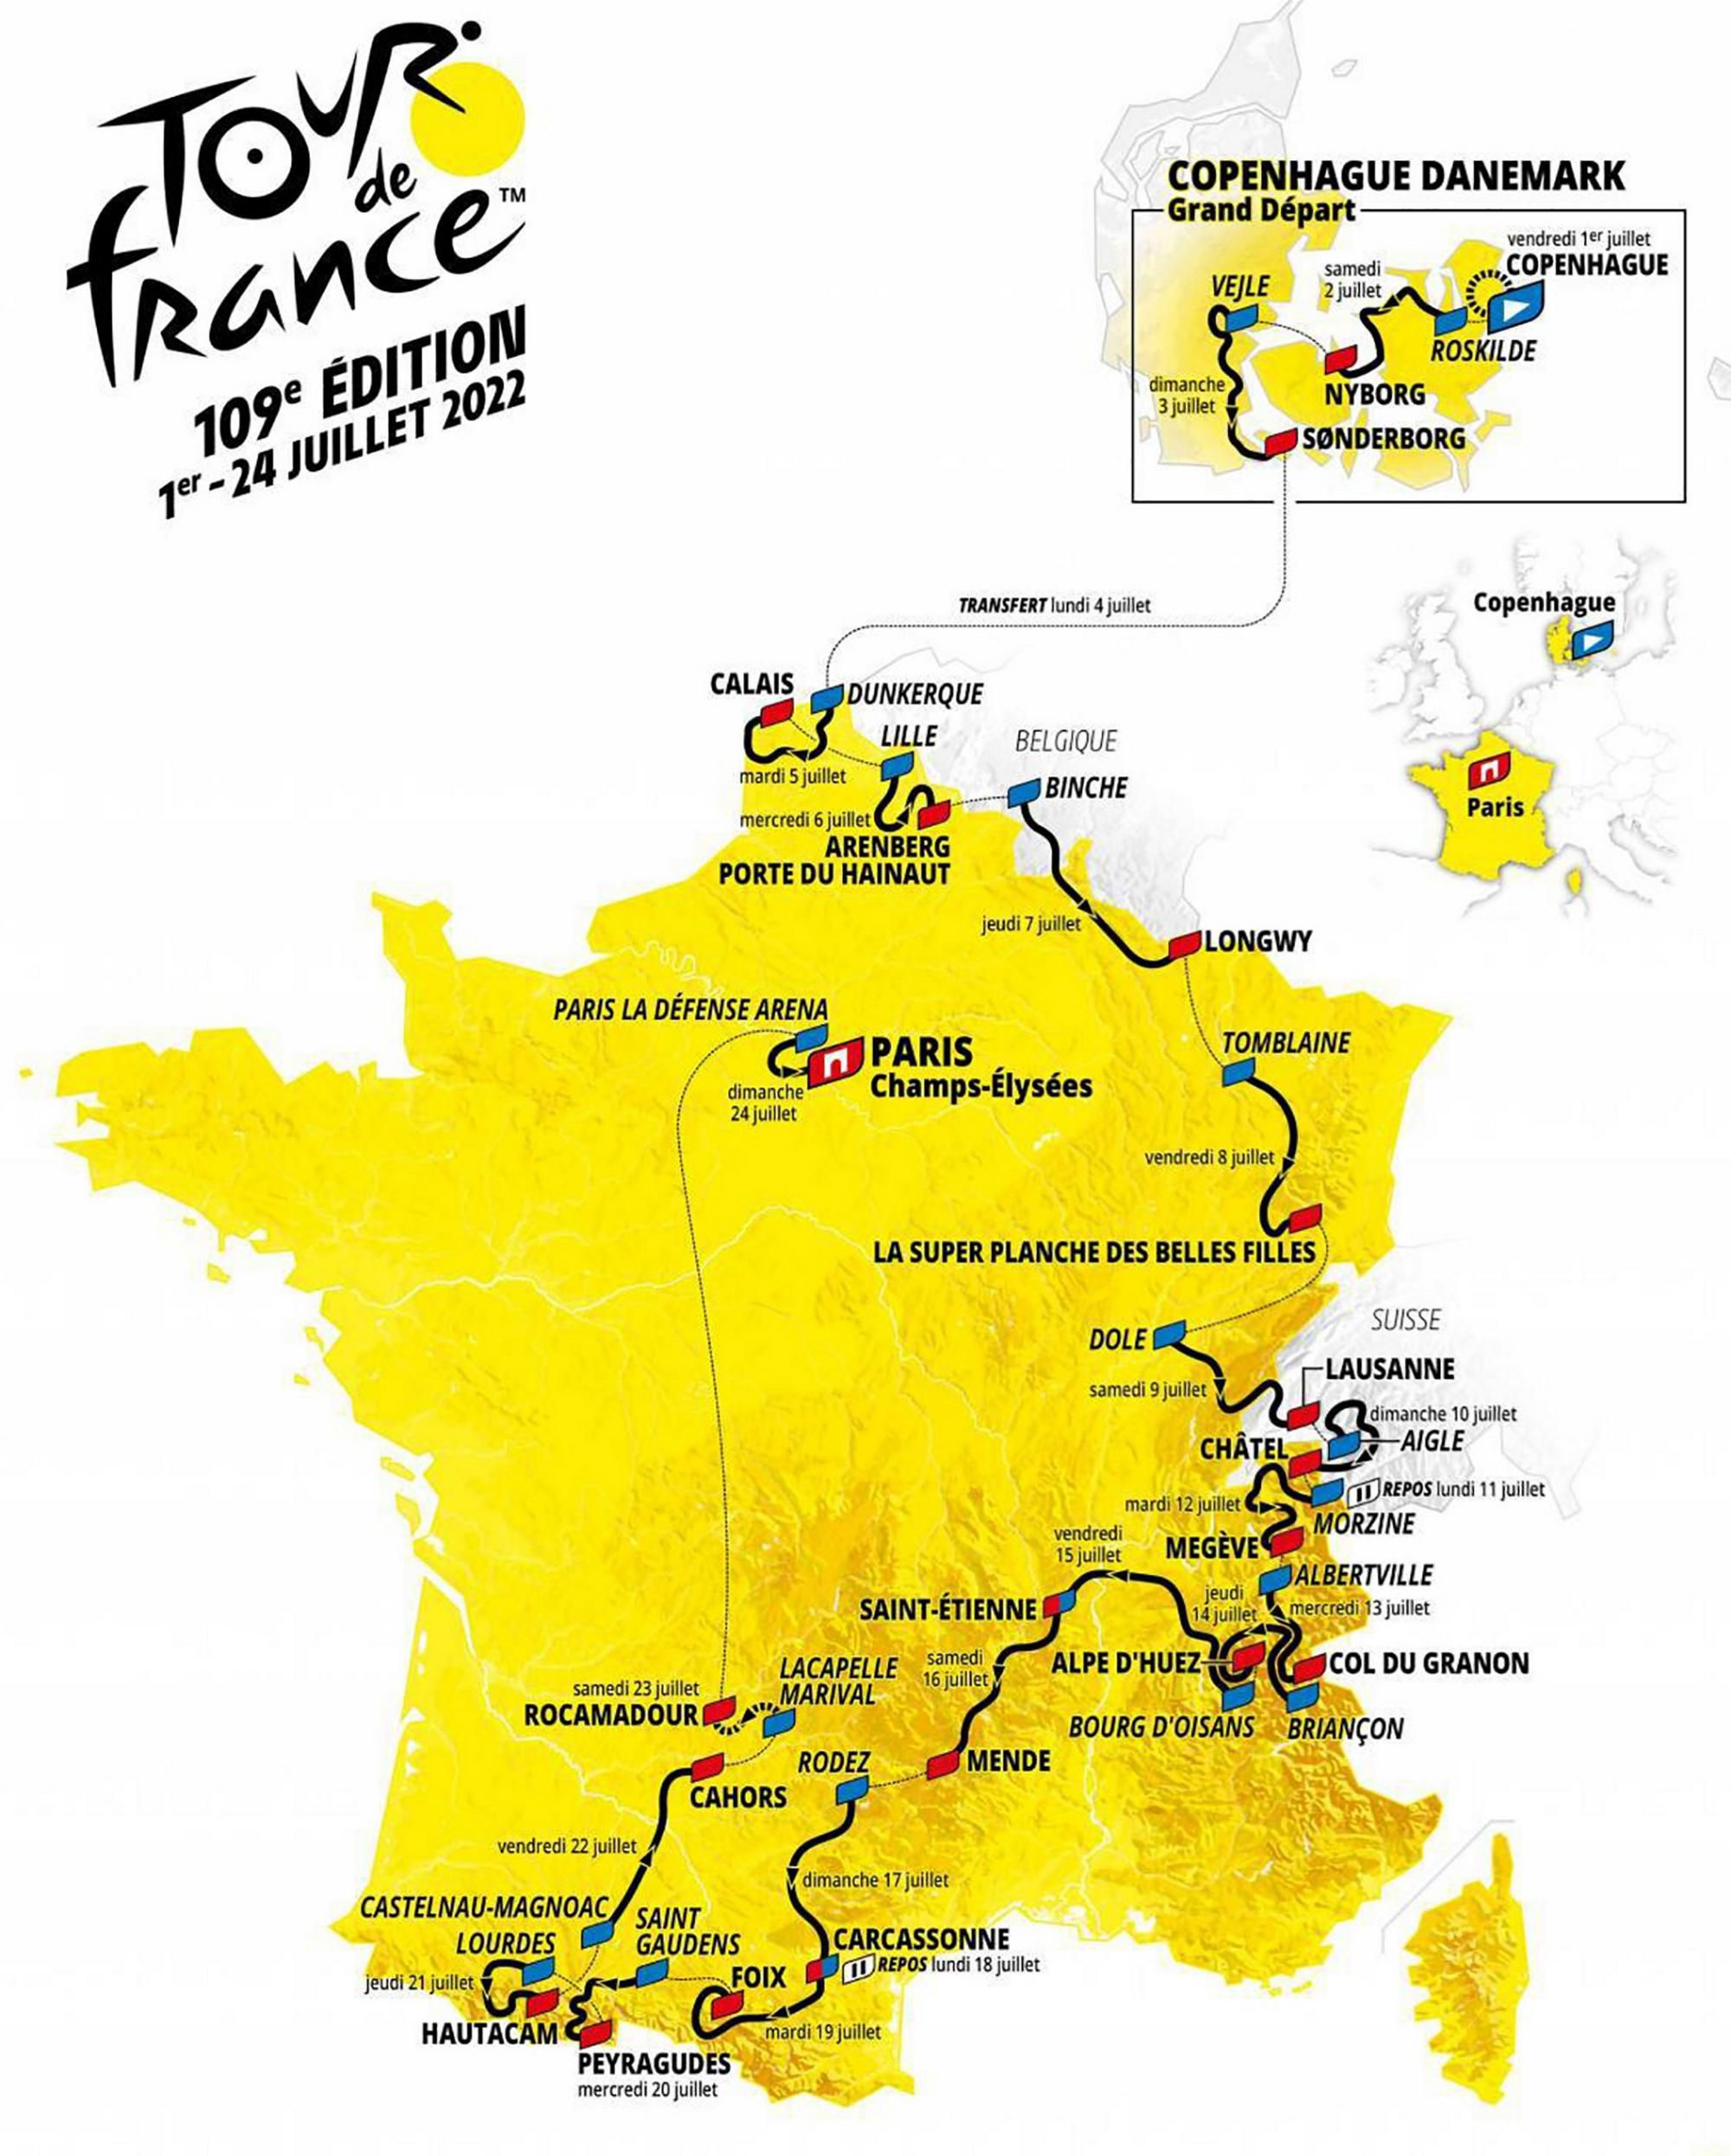 Mapa s jednotlivými etapami počas prezentácie nového ročníka prestížnych pretekov Tour de France 2022 v Paríži.